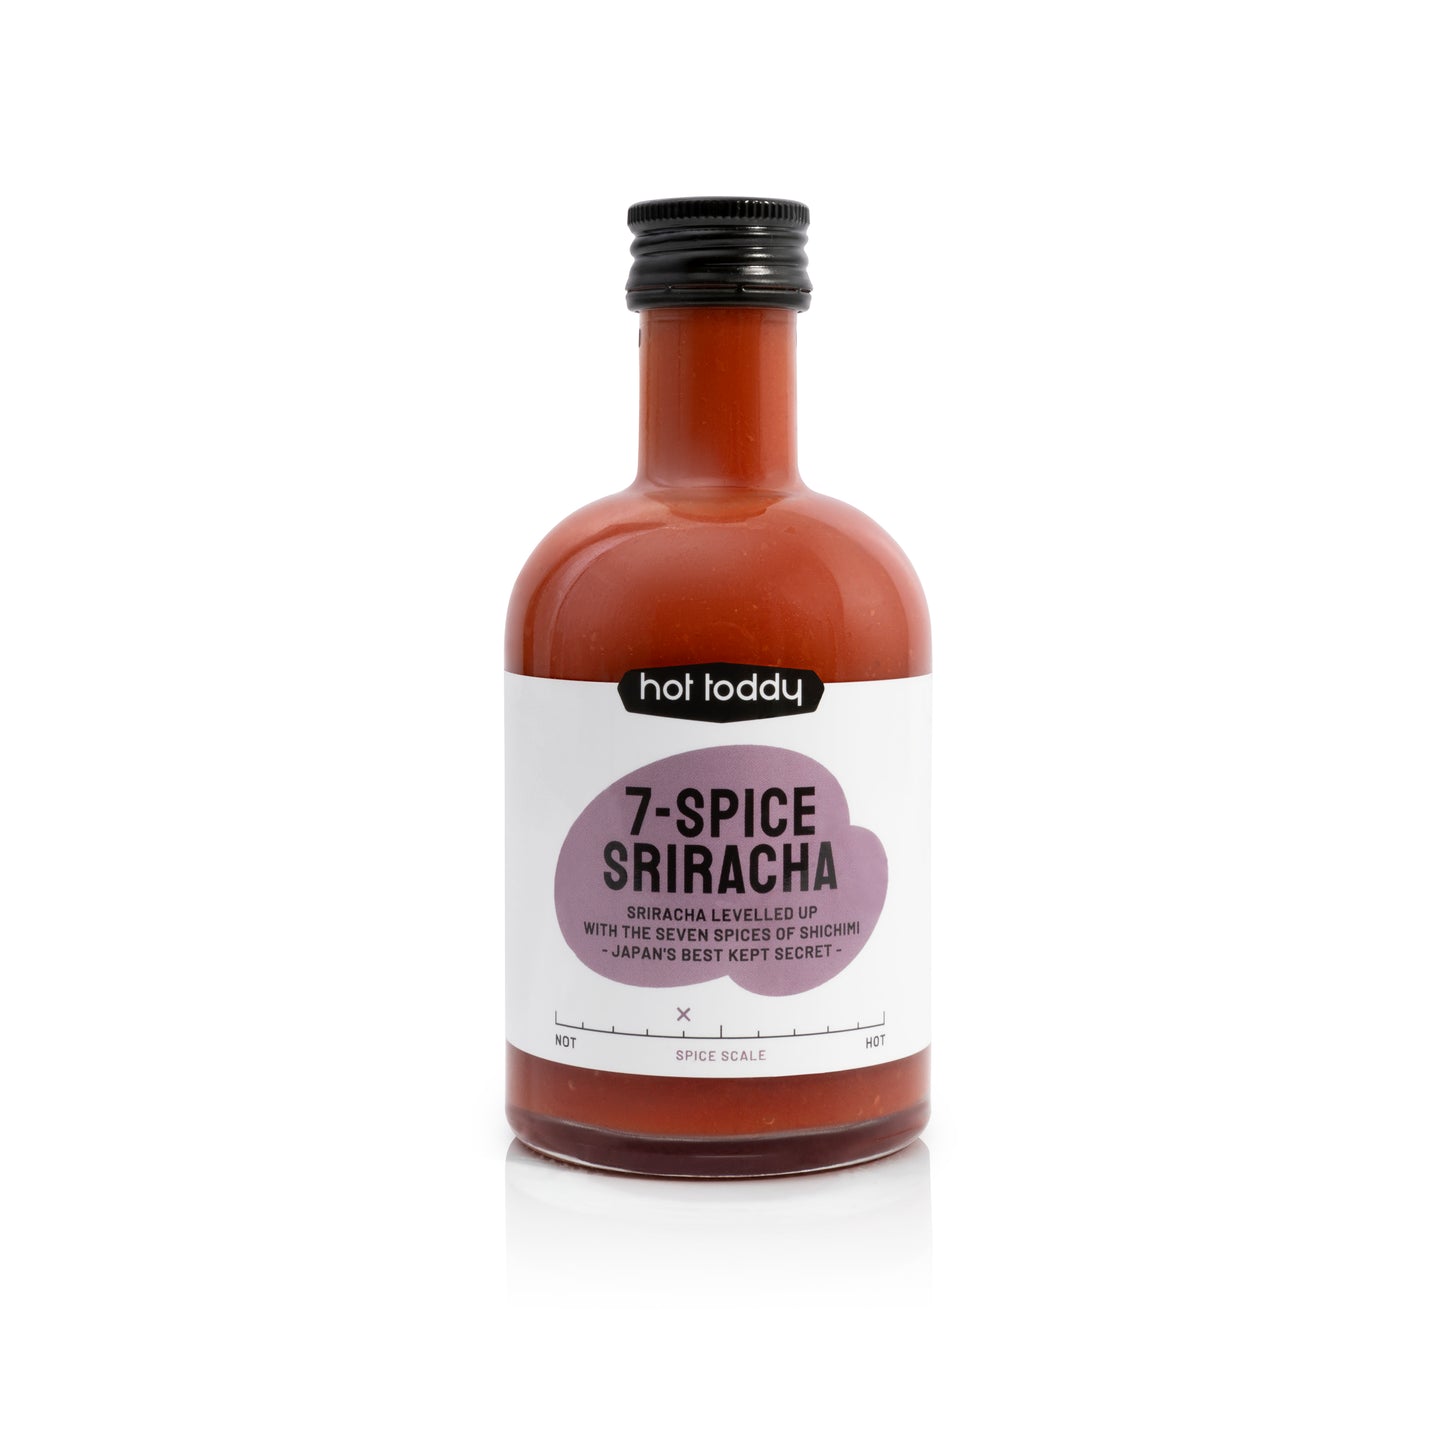 7-Spice Sriracha